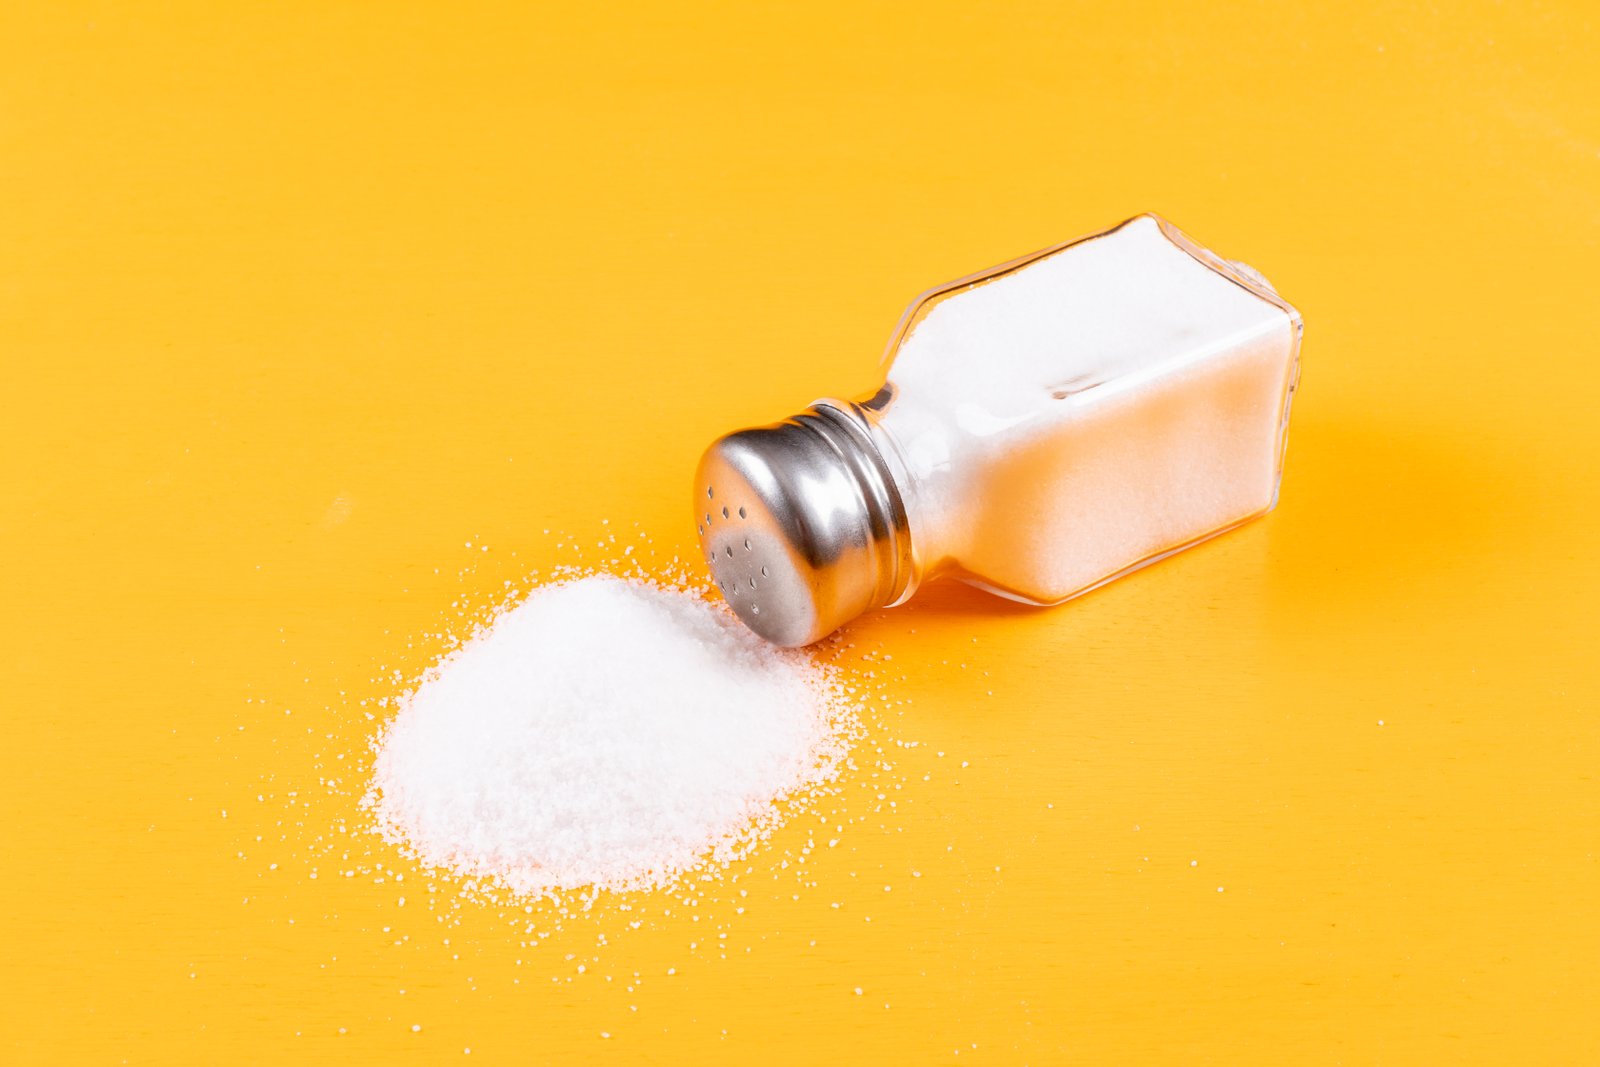 O consumo equilibrado de sal, evita a hipertensão arterial – Dia da Saúde e da Nutrição – 31 de Março